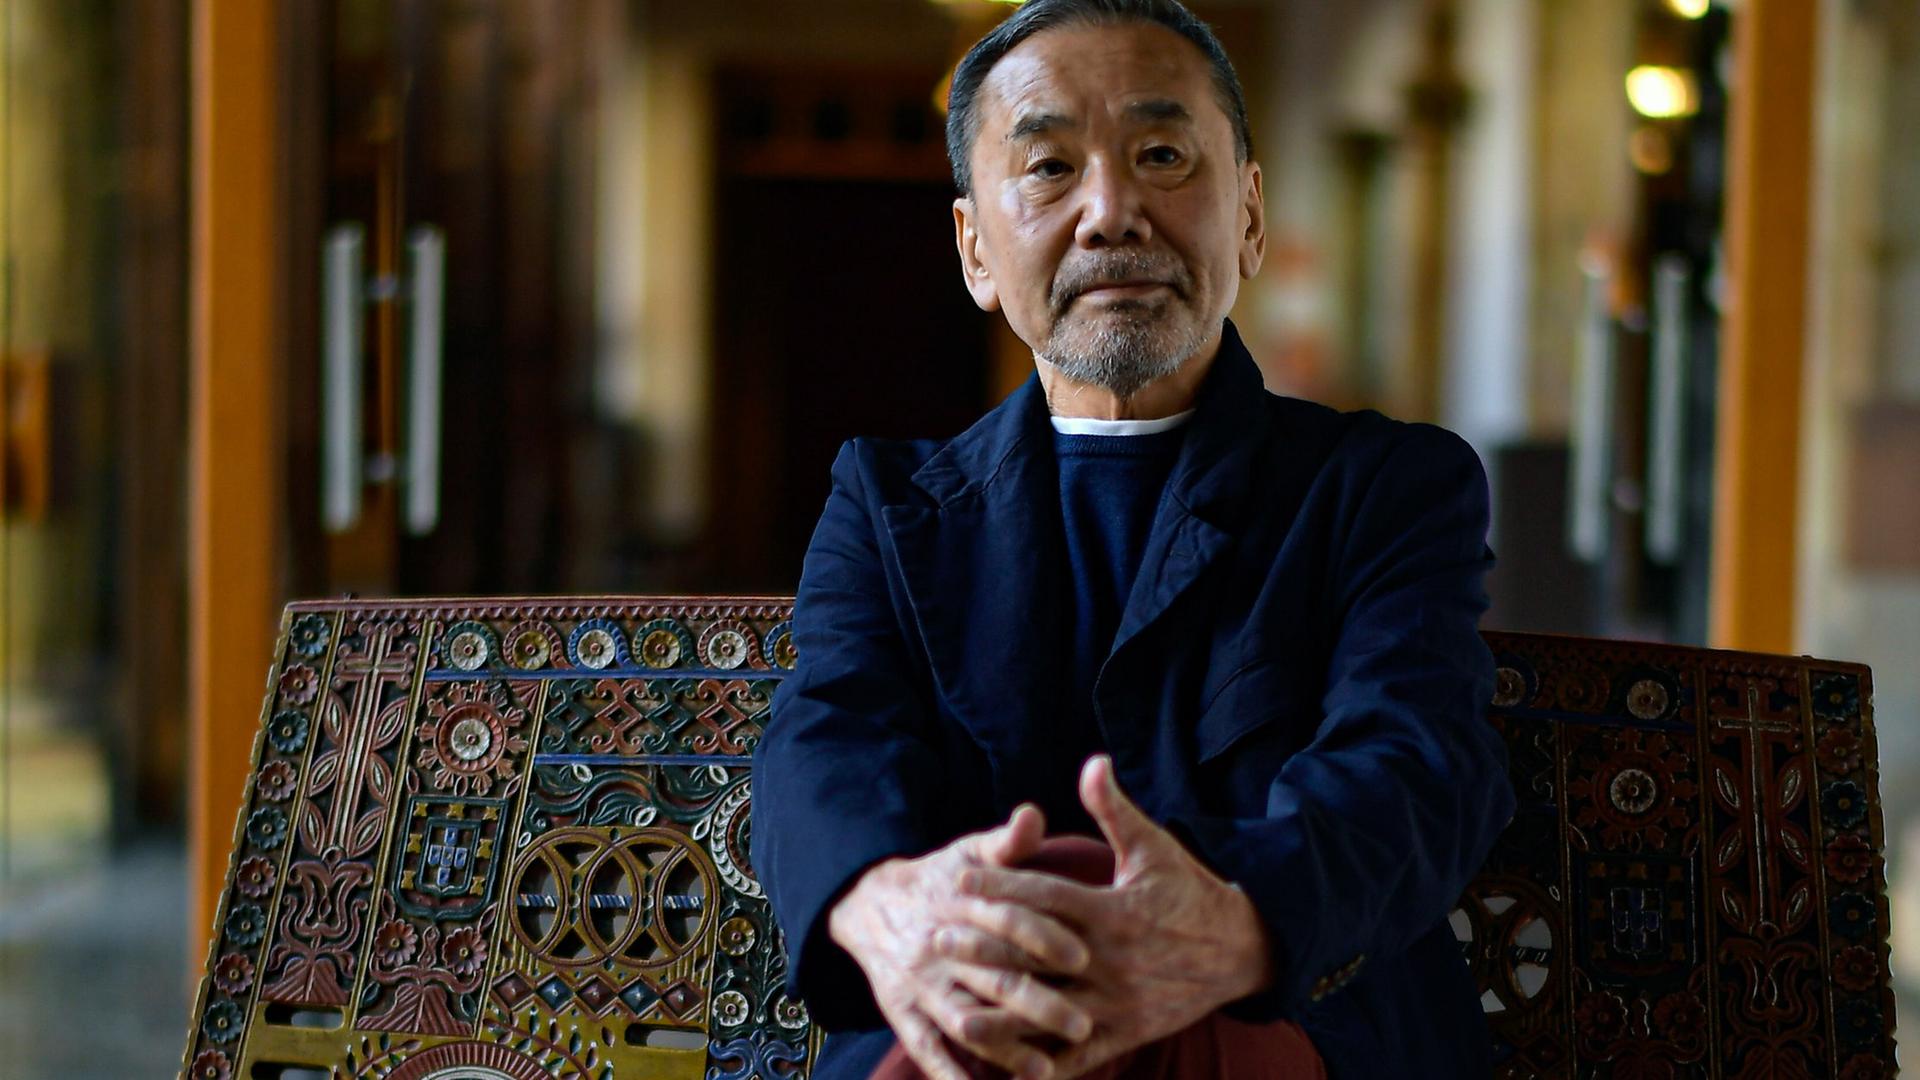 La nueva novela de Murakami: De meditaciones y salas de rompecabezas